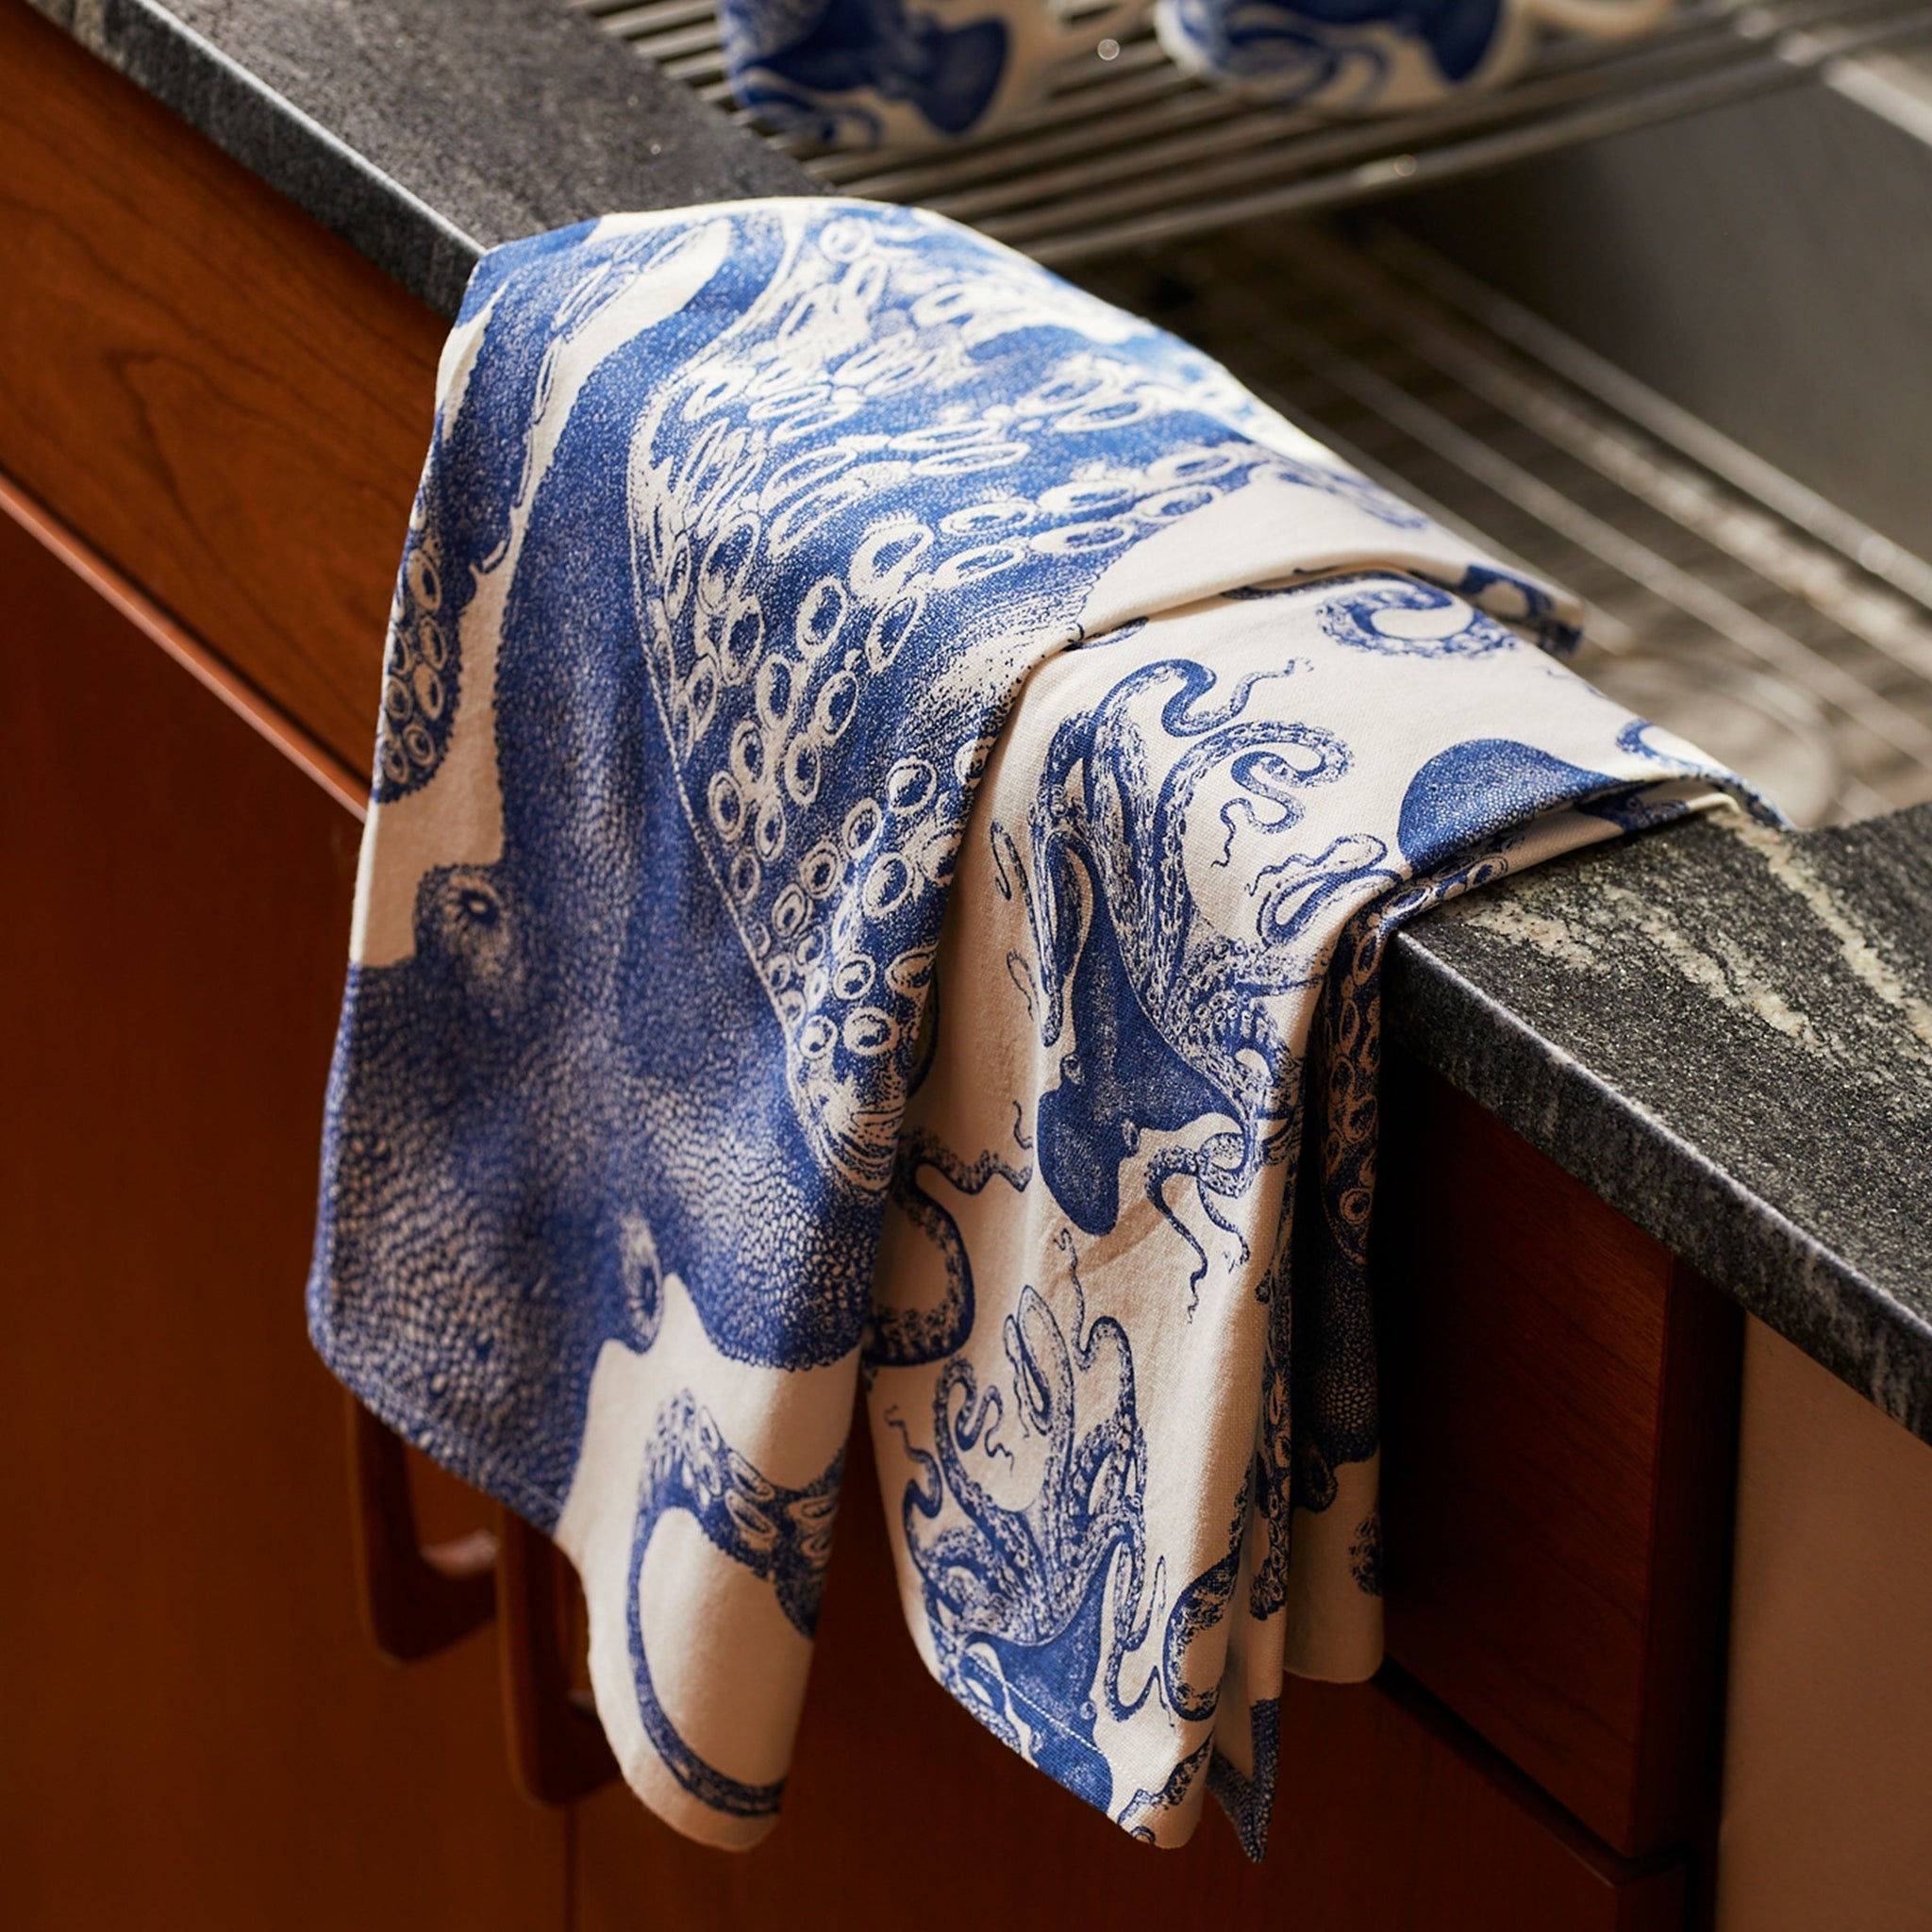 Blue Kitchen Dish Towels